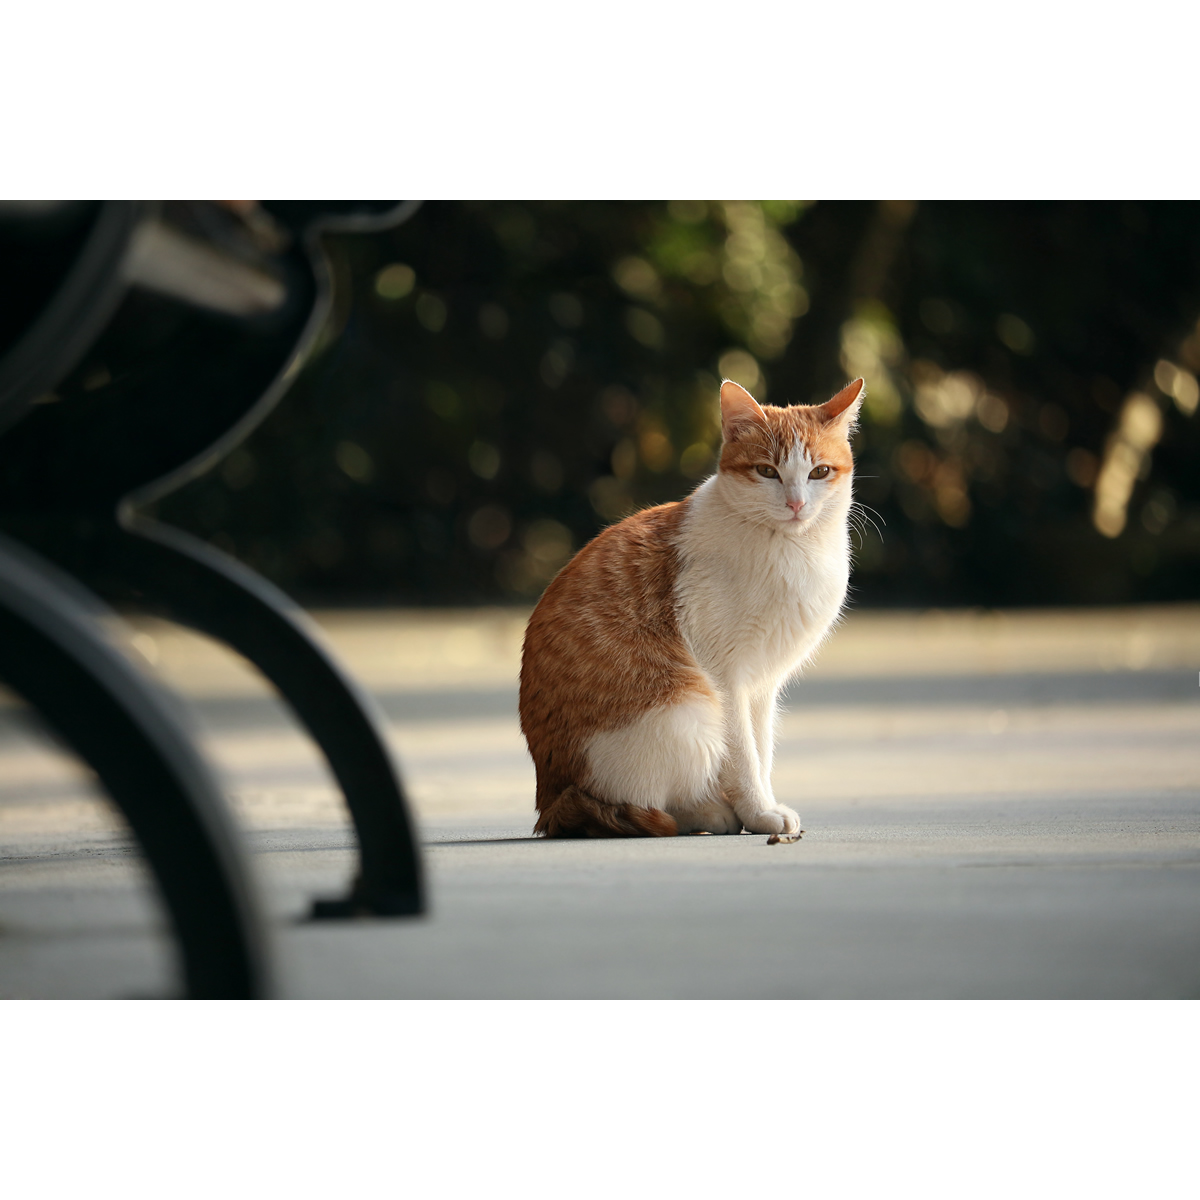 原创动物摄影作品-橘猫/宠物猫喵(1张) 高清设计素材/PS图片原图